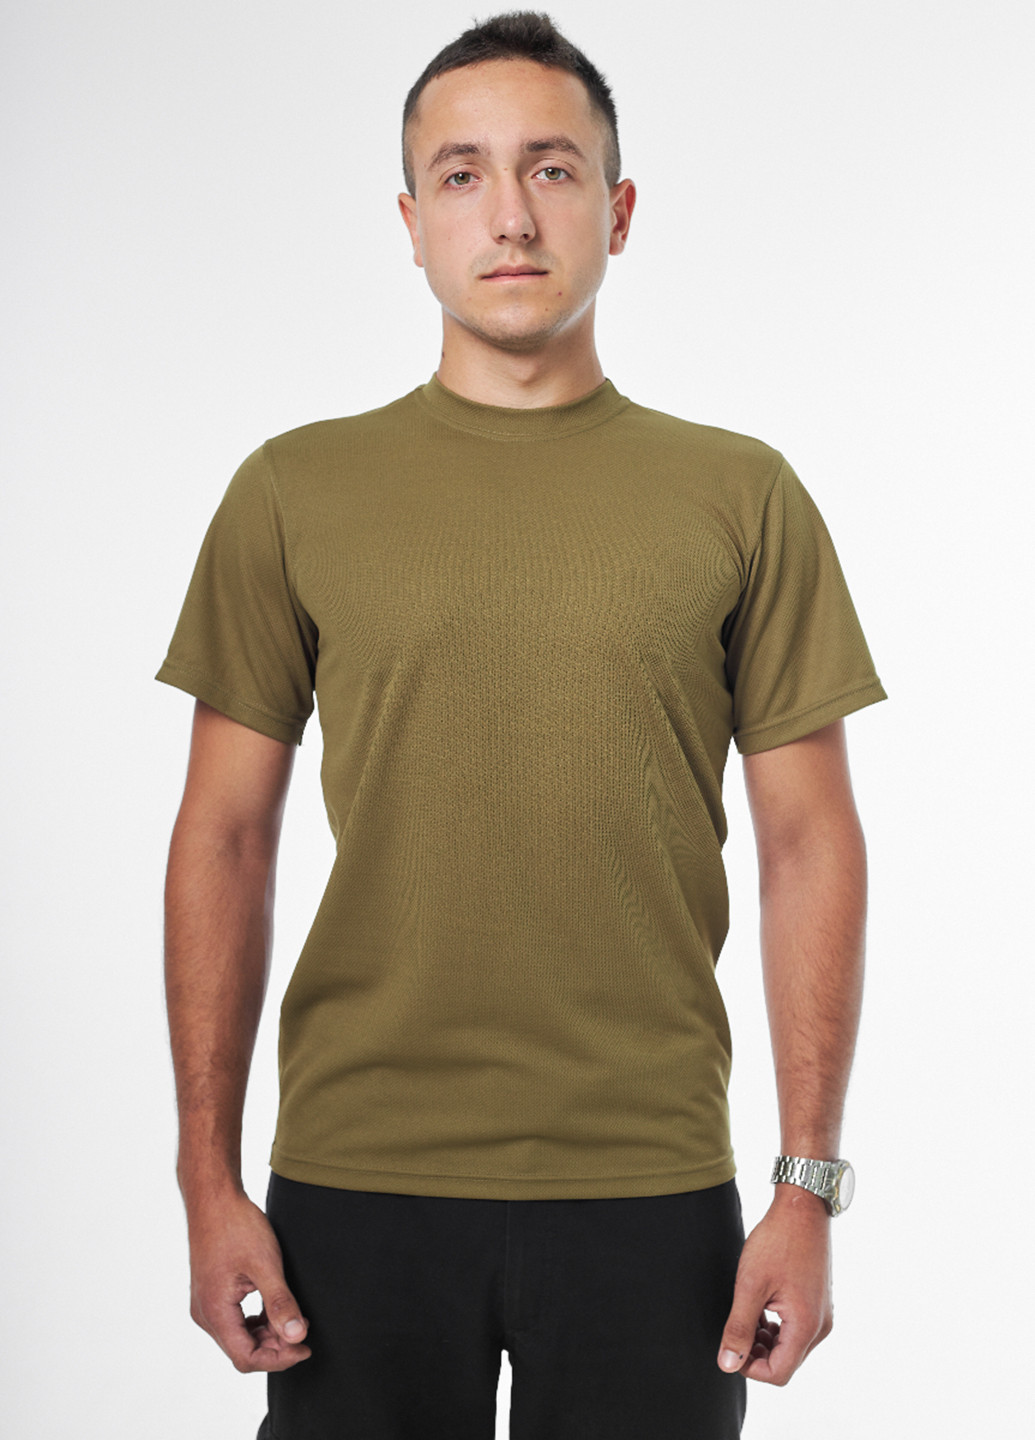 Хаки (оливковая) футболка MaCo exclusive